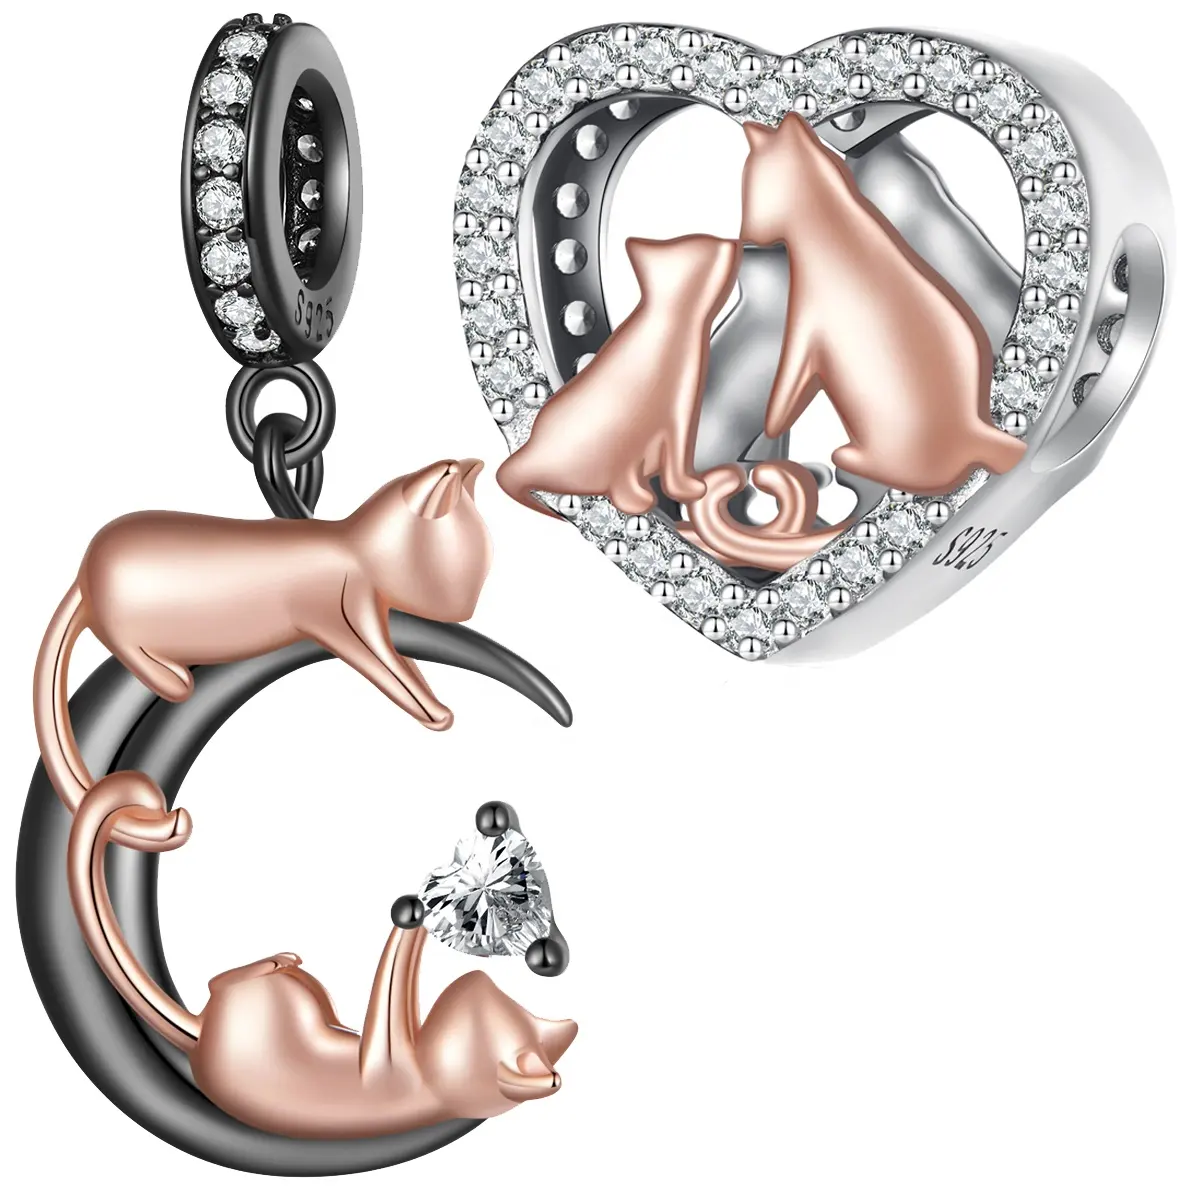 Jilina nuovo design 925 argento Sterling placcato in oro rosa che bacia ciondolo ciondolo bracciale misura collana donna gioielli perline fai da te